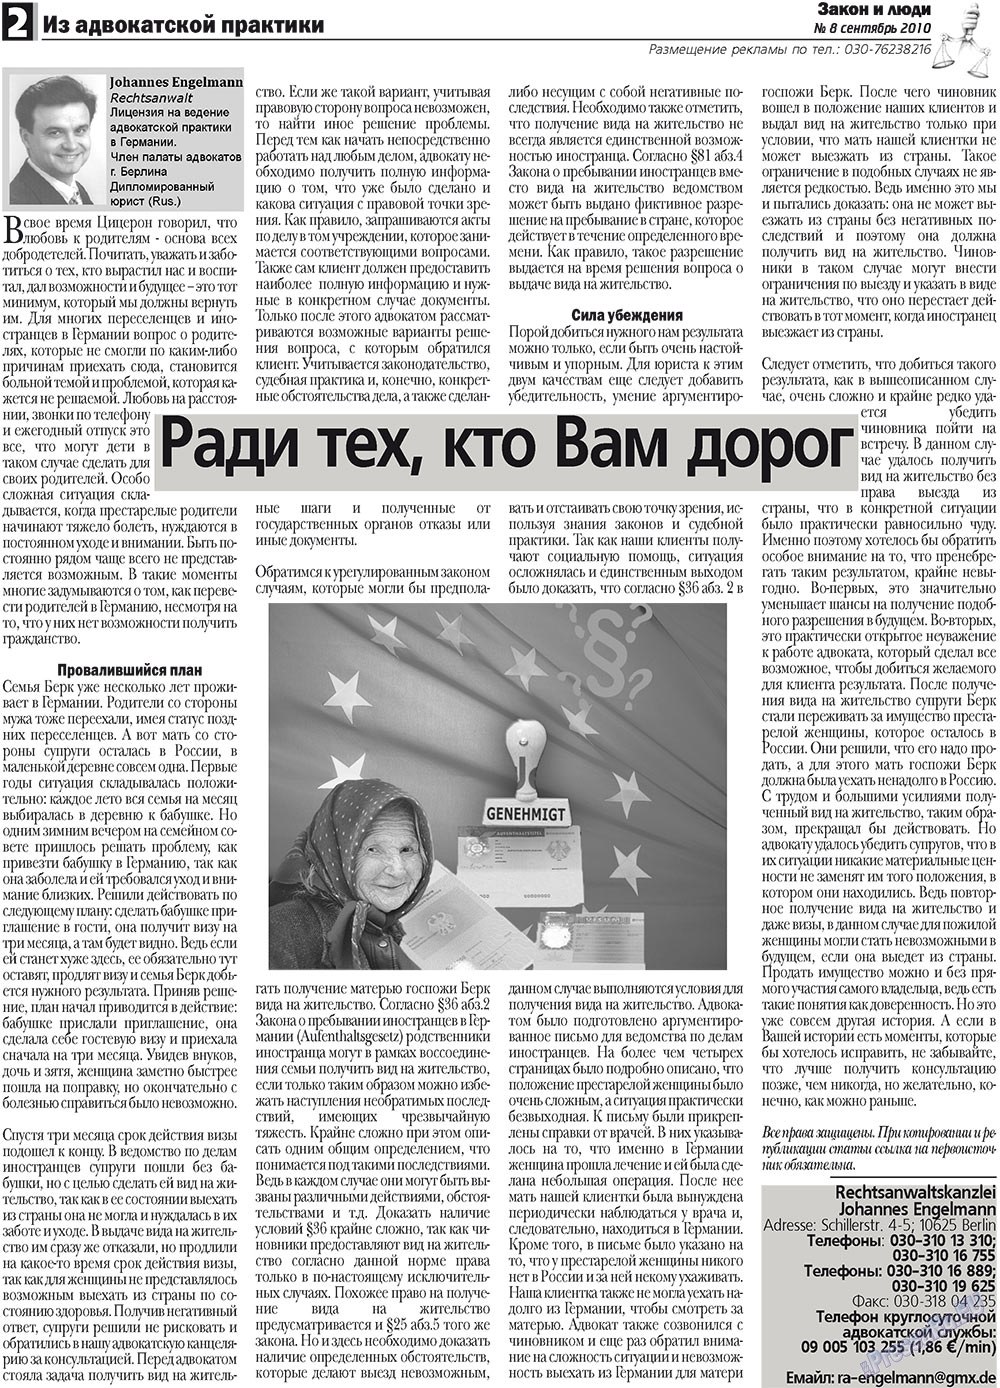 Закон и люди, газета. 2010 №8 стр.2